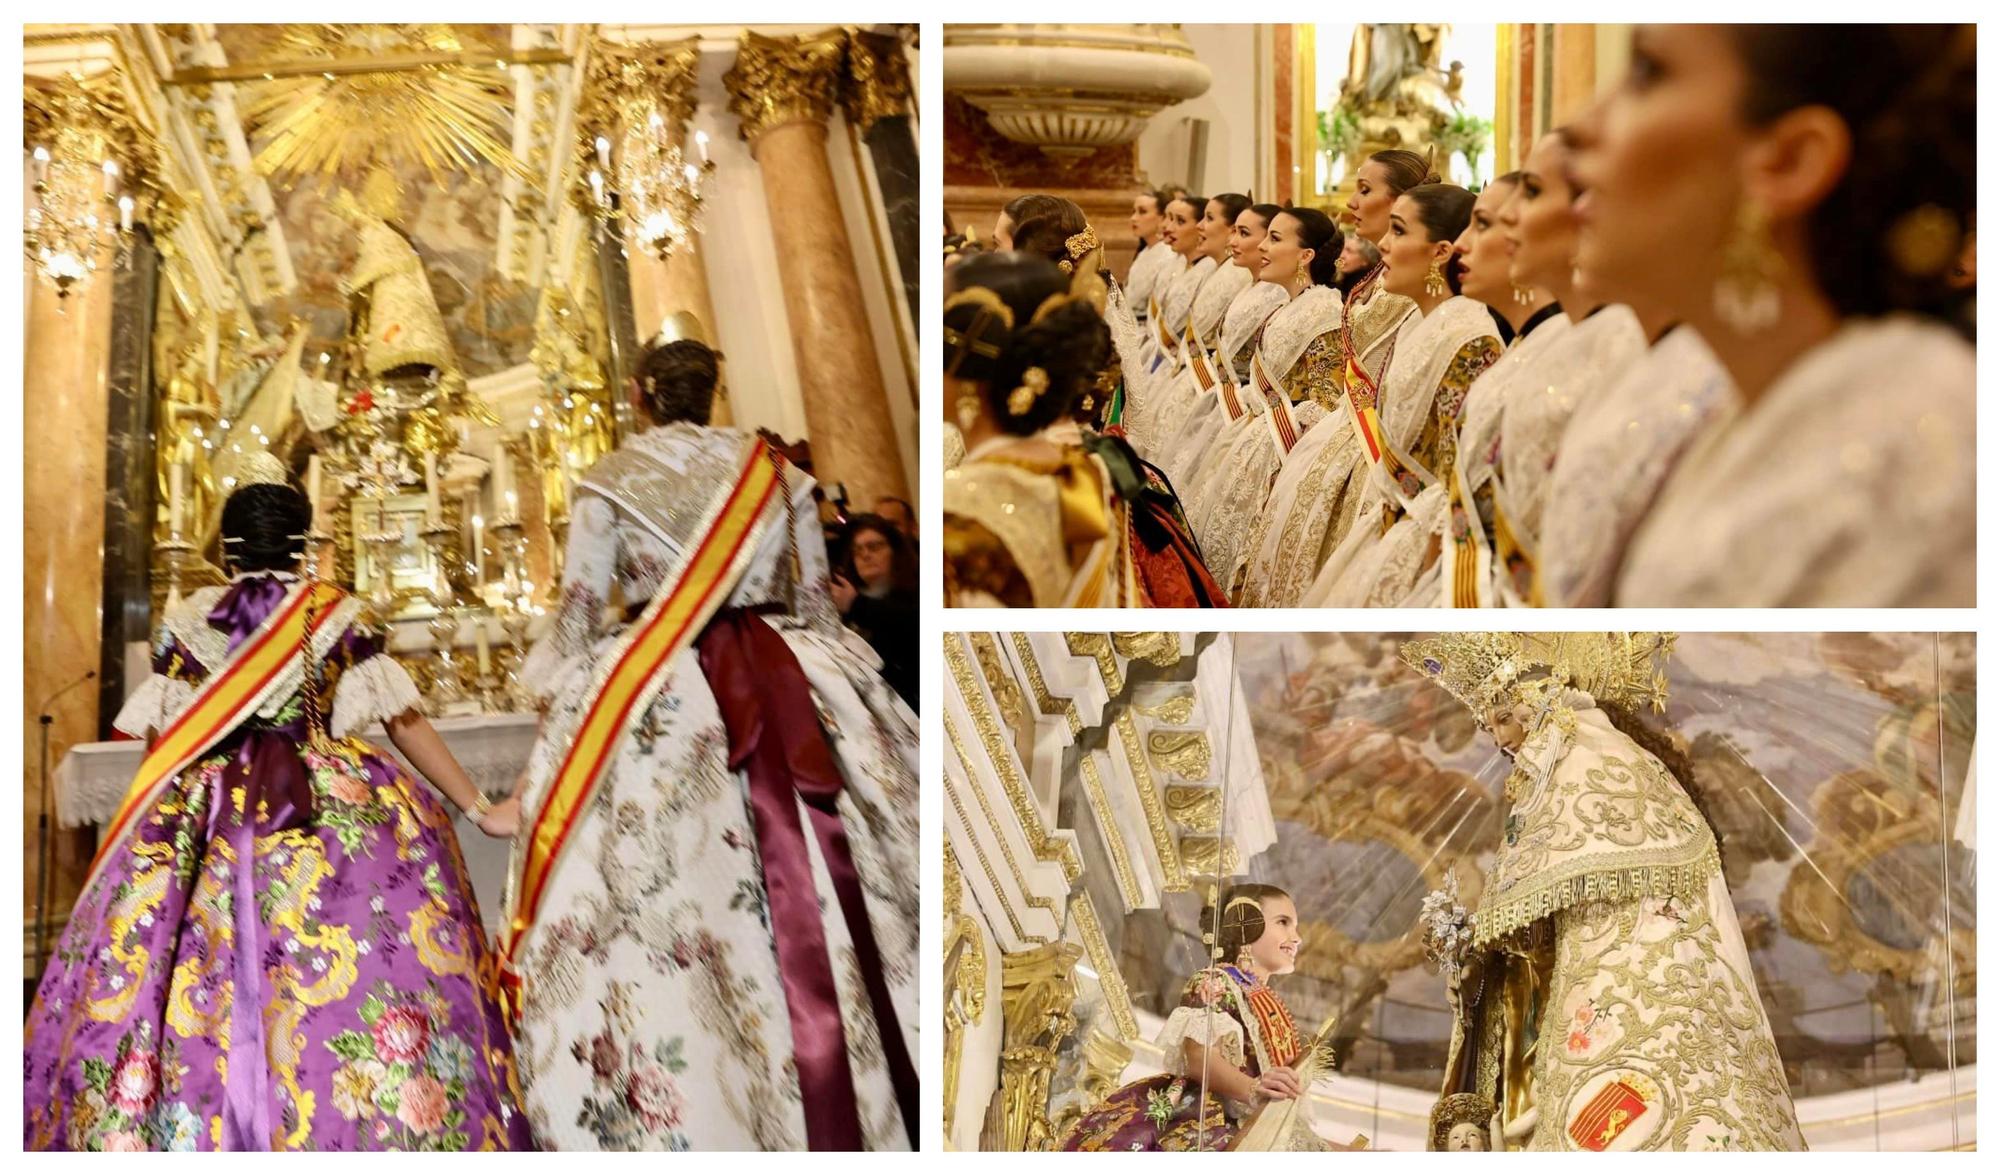 La visita a la Basílica completa la fiesta de la Exaltación en las Fallas 2023